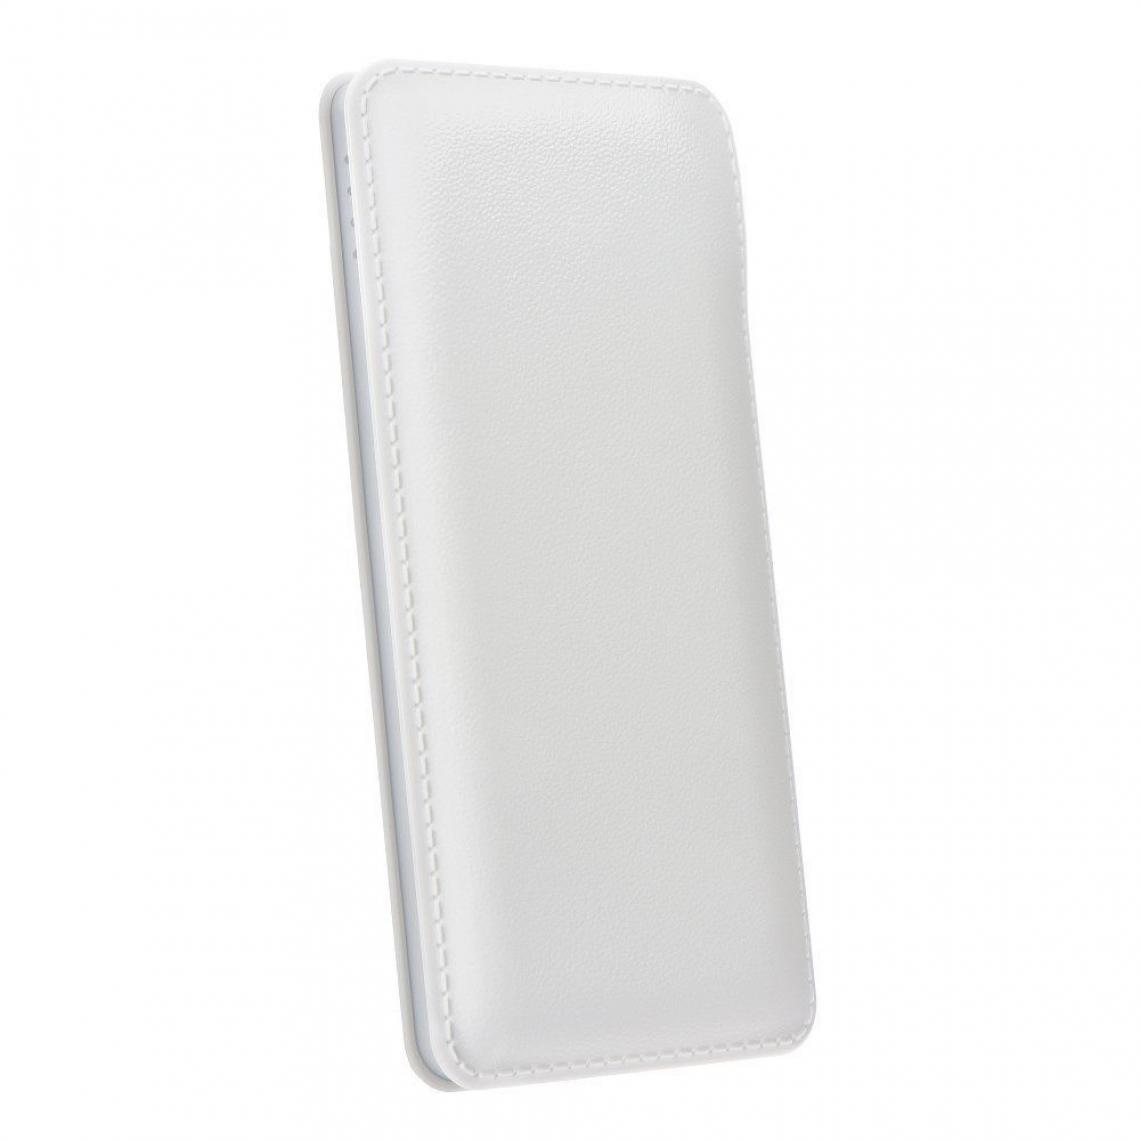 Ozzzo - Chargeur batterie externe 20000 mAh powerbank ozzzo blanc pour Elephone A6 Max - Autres accessoires smartphone